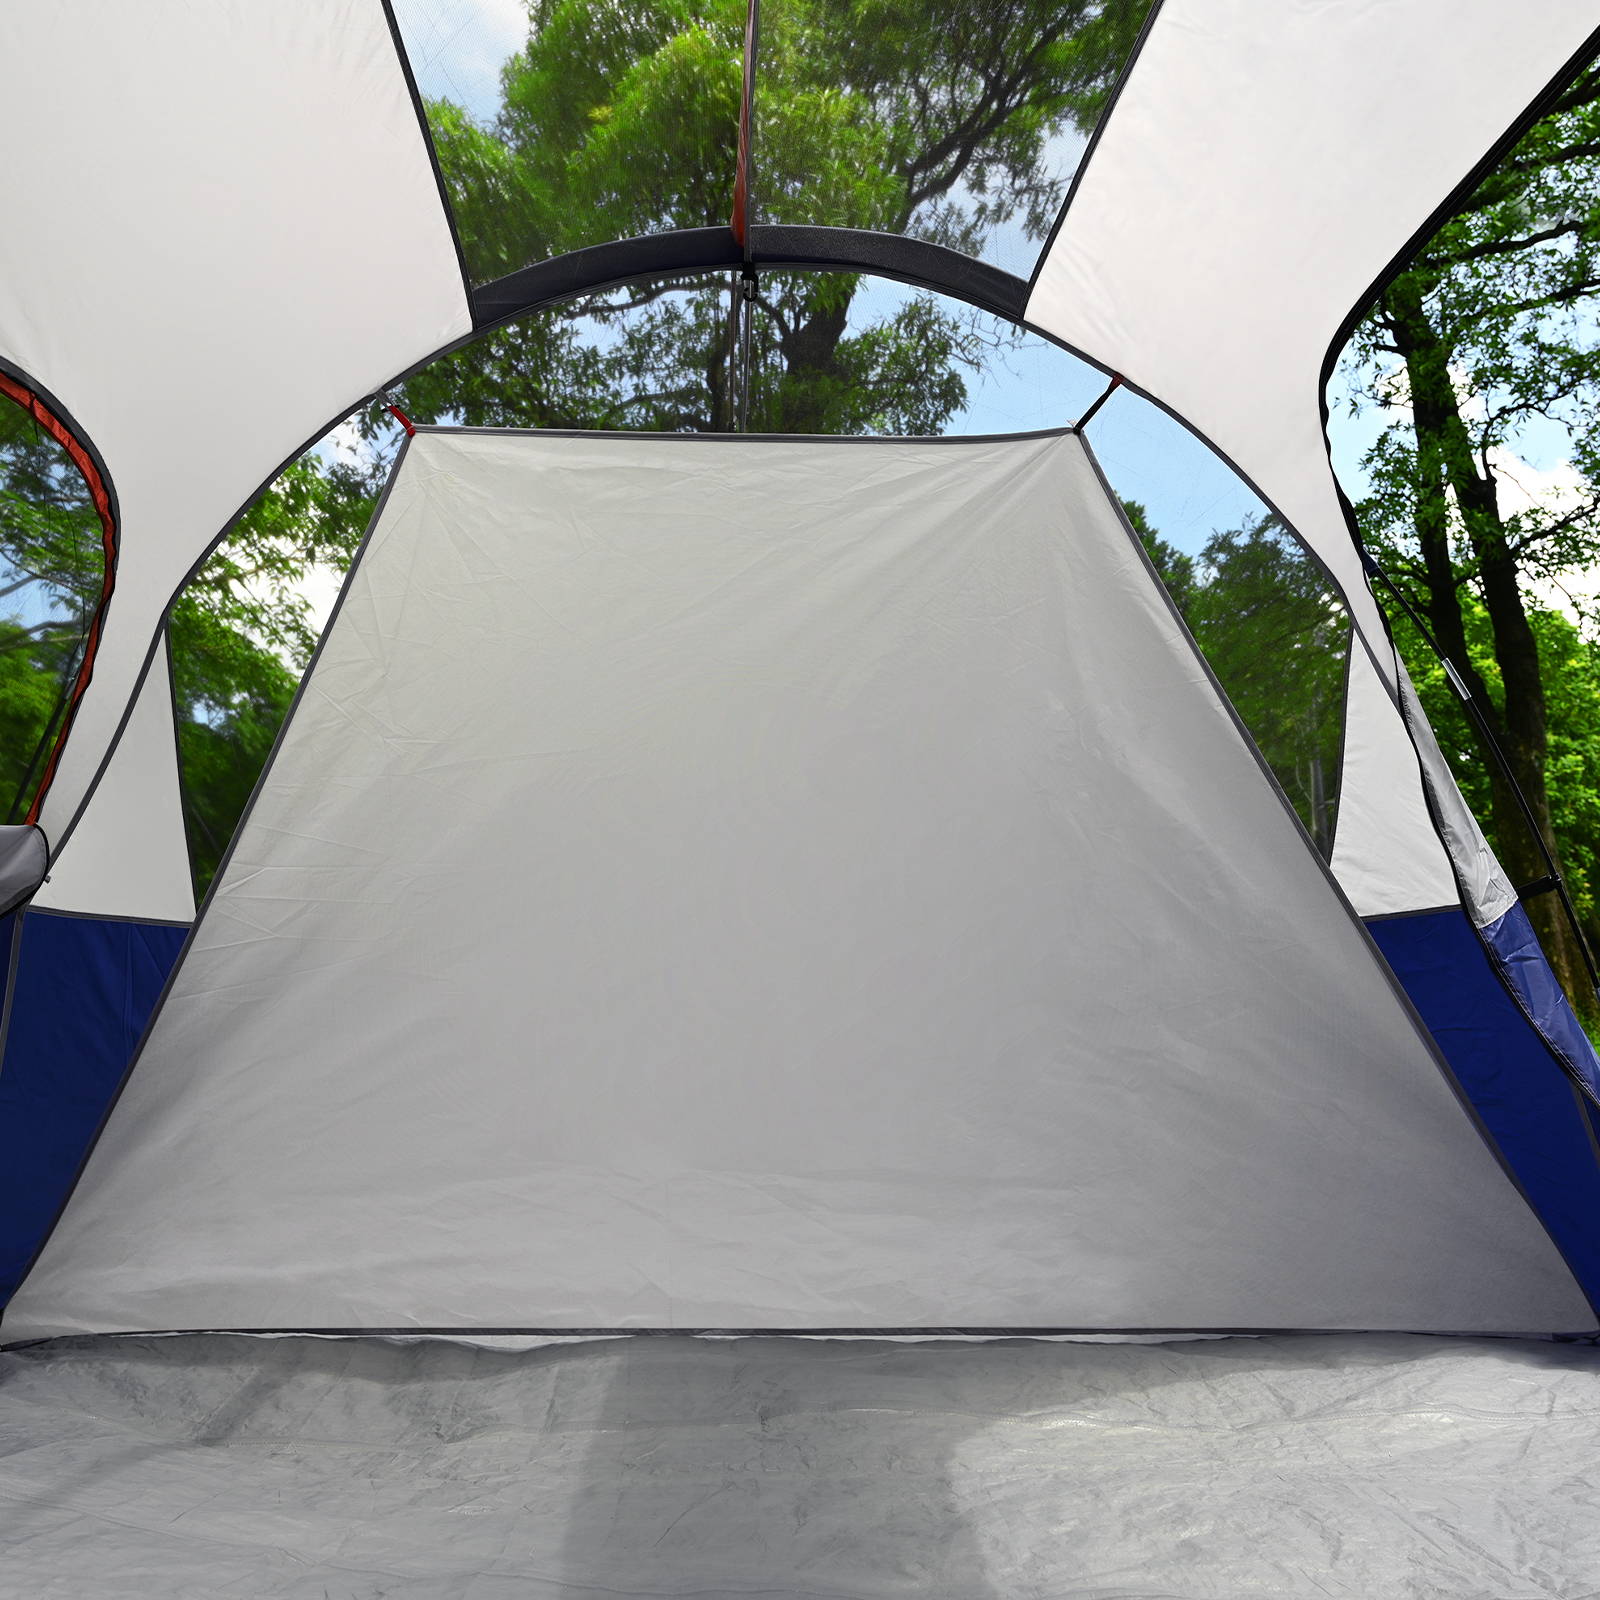 CAMPROS CP Tienda de campaña para 3 personas – Tienda de campaña tipo domo  para camping, tienda de campaña impermeable y resistente al viento, fácil